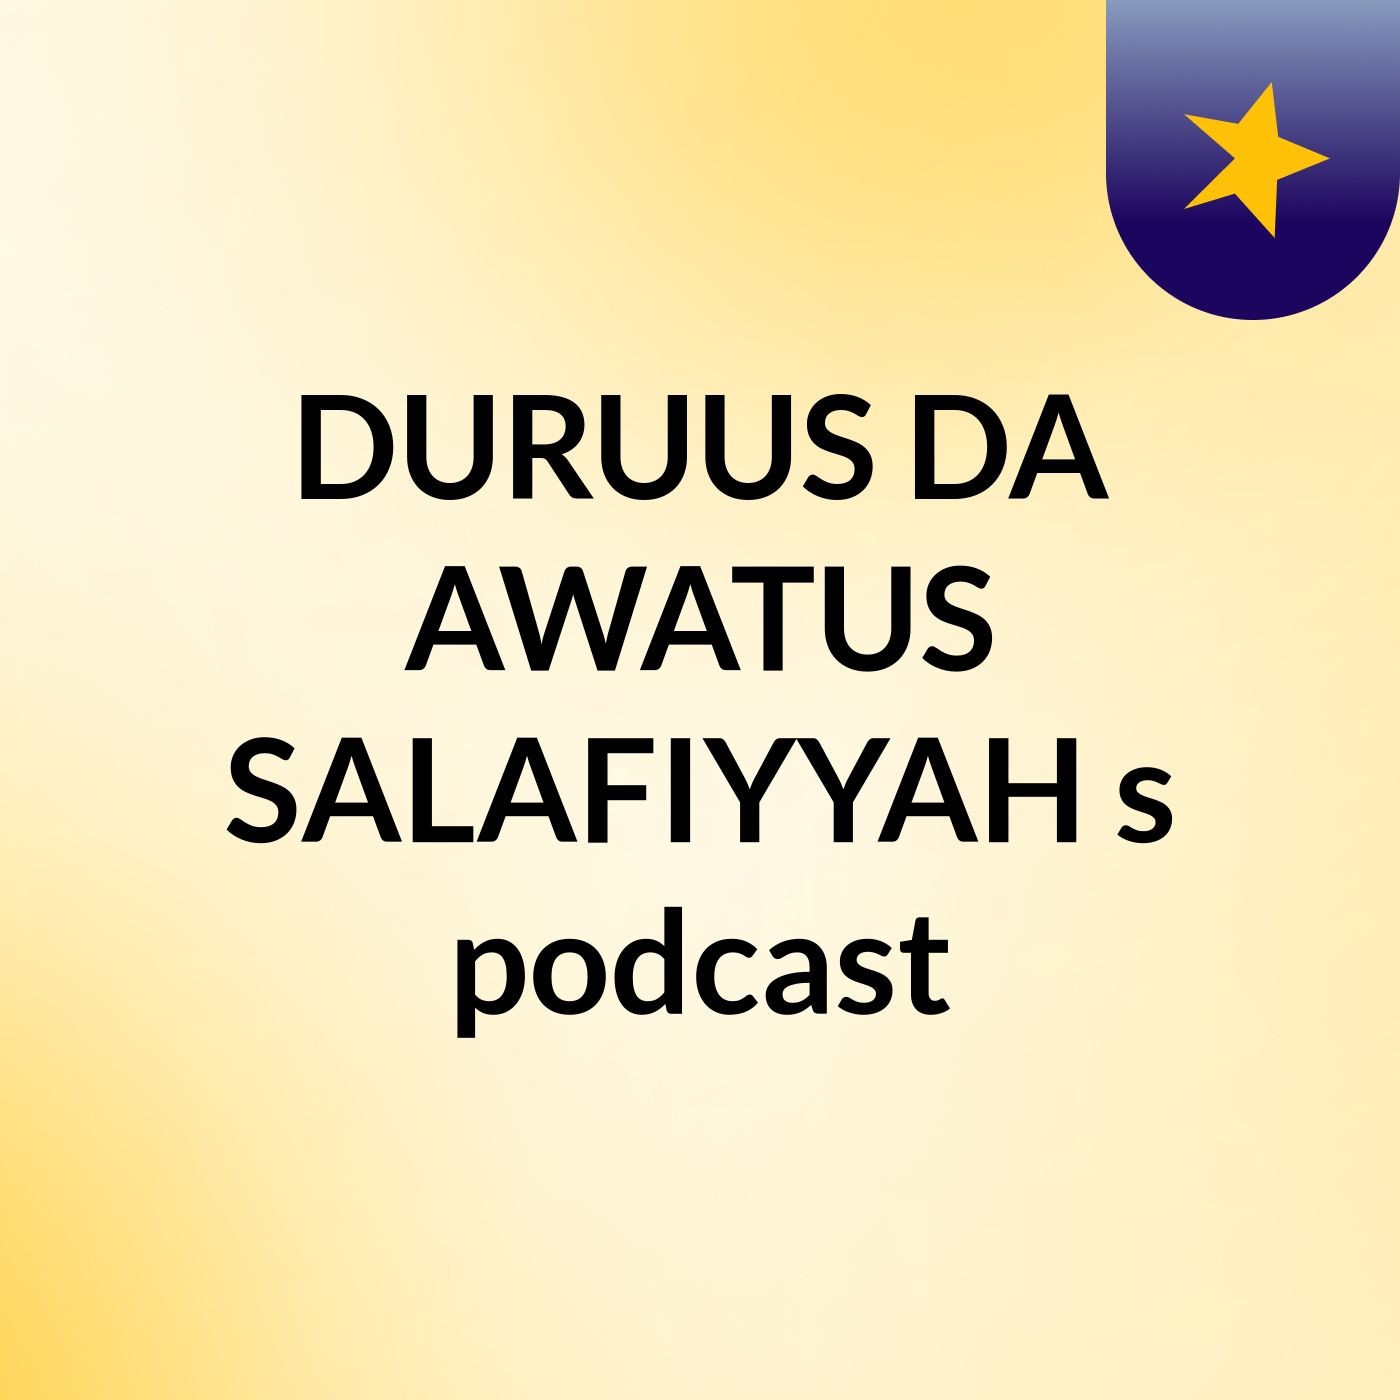 DURUUS DA,AWATUS SALAFIYYAH's podcast